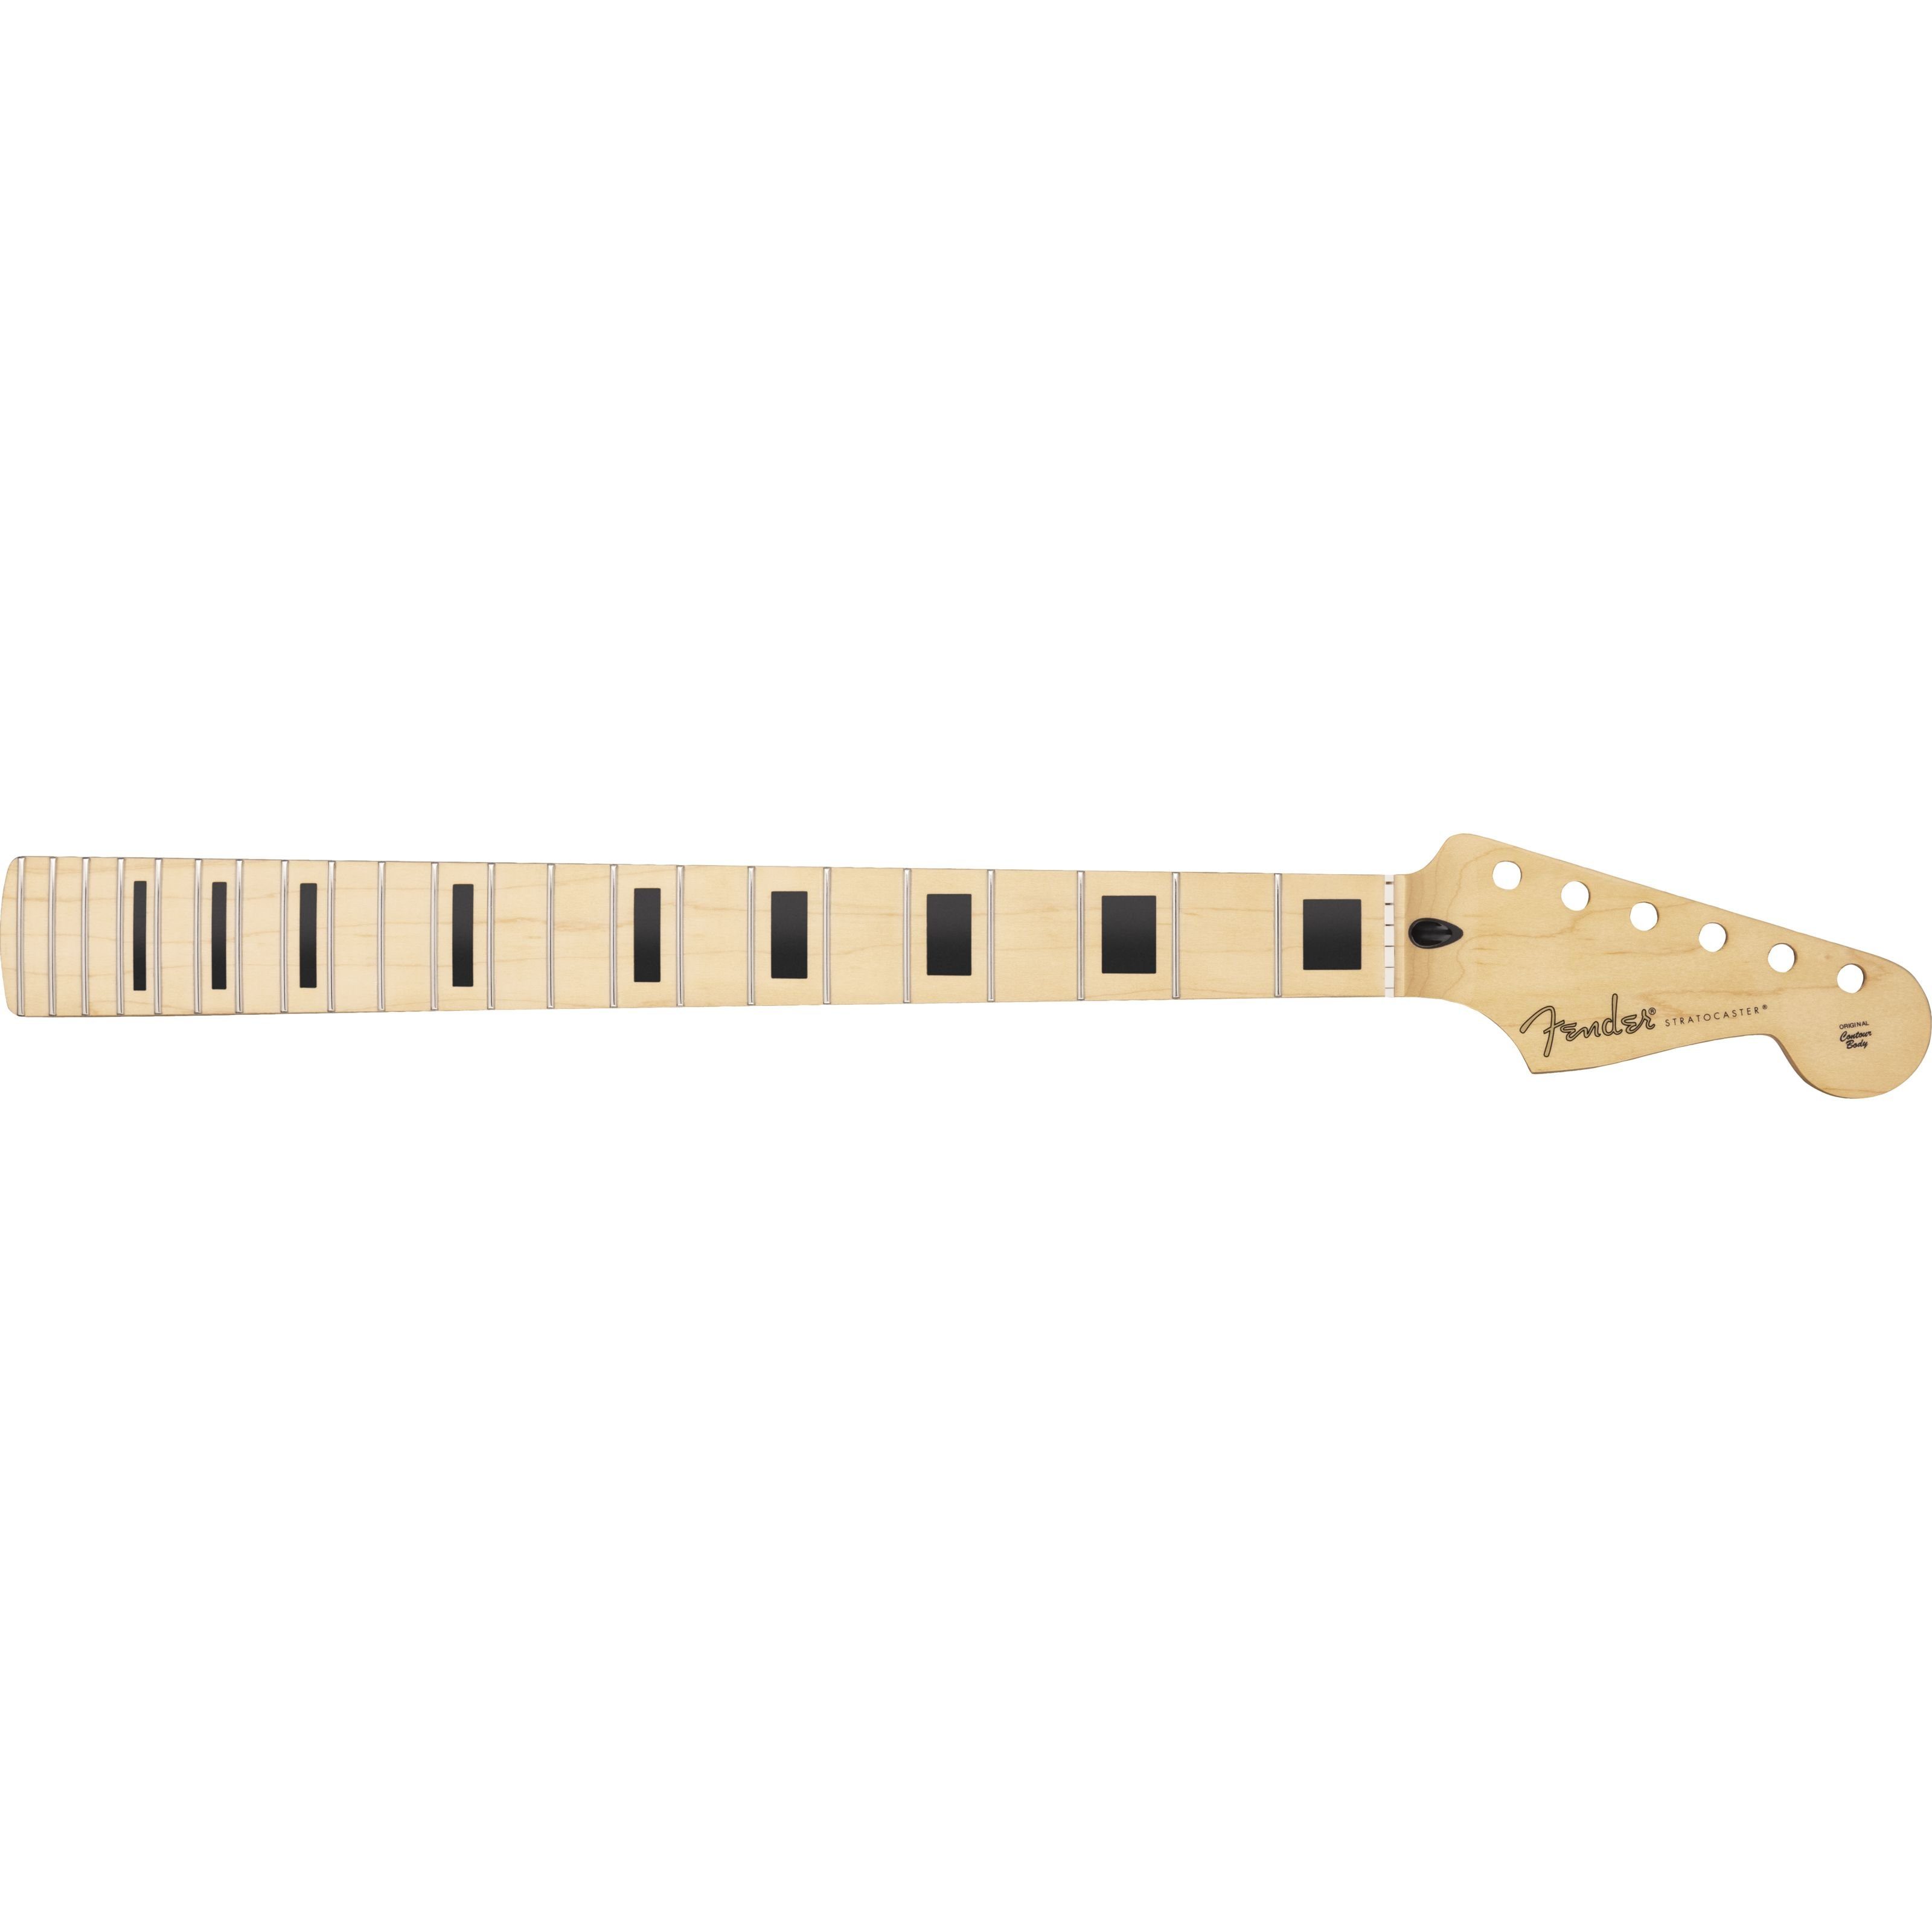 Fender Spielzeug-Musikinstrument, Player Series Stratocaster Neck MN Block Inlays - Gitarren Ersatzteil